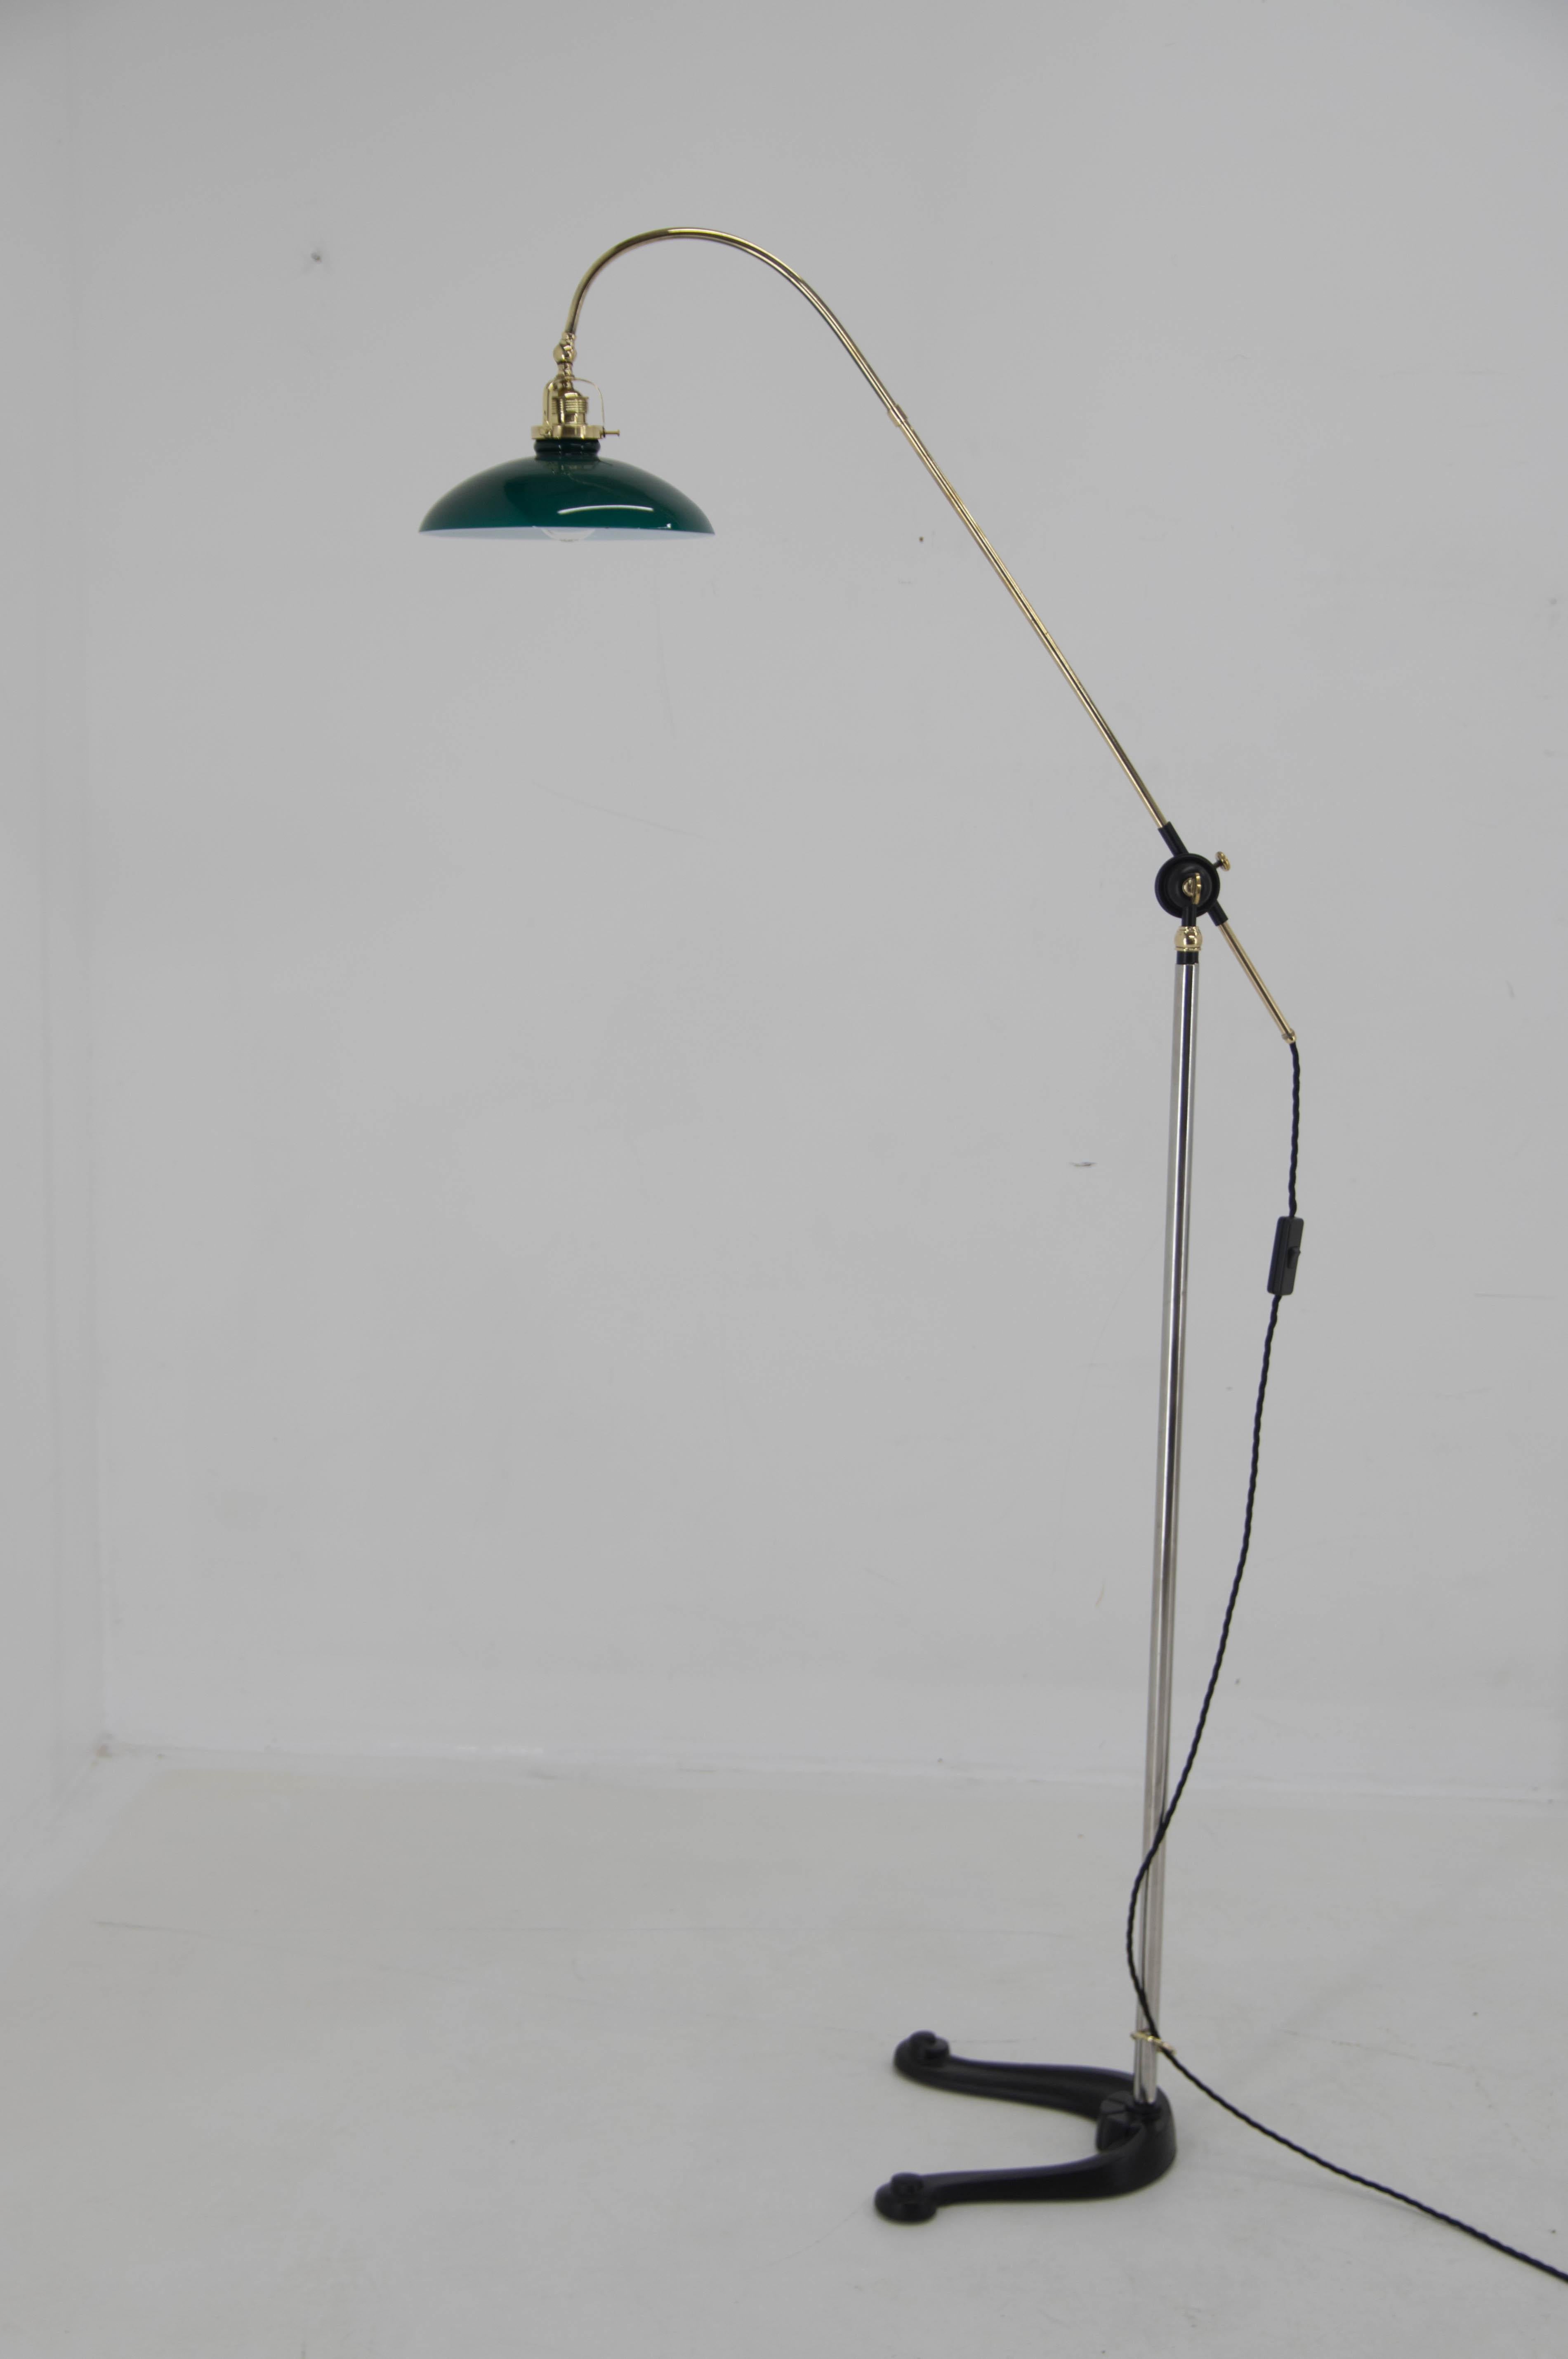 Lampadaire Art Déco avec bras et abat-jour réglables.
Fabriqué au Danemark dans les années 1940.
Entièrement restauré, remis à neuf et recâblé.
1x40W, ampoule E25-E27
Adaptateur pour prise américaine inclus